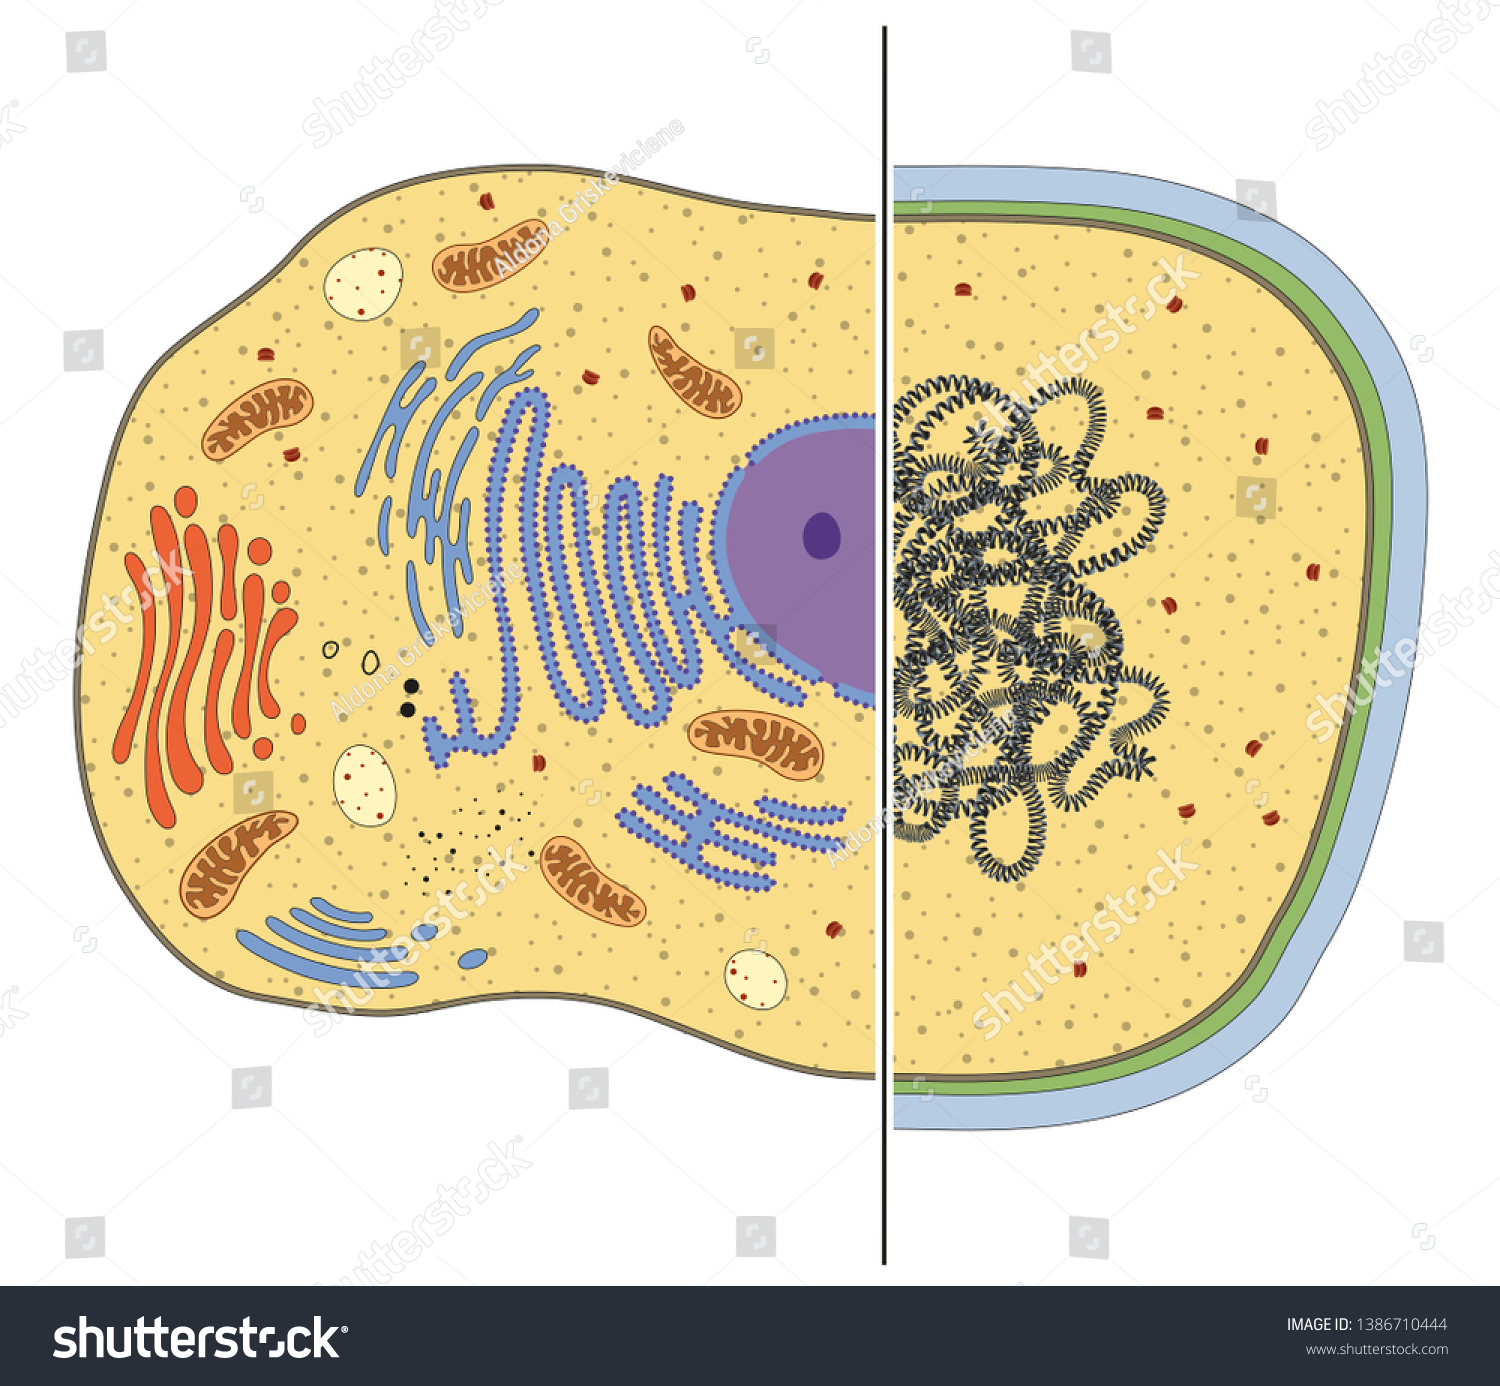 真核細胞と原核細胞のイラスト 違い のイラスト素材 1386710444